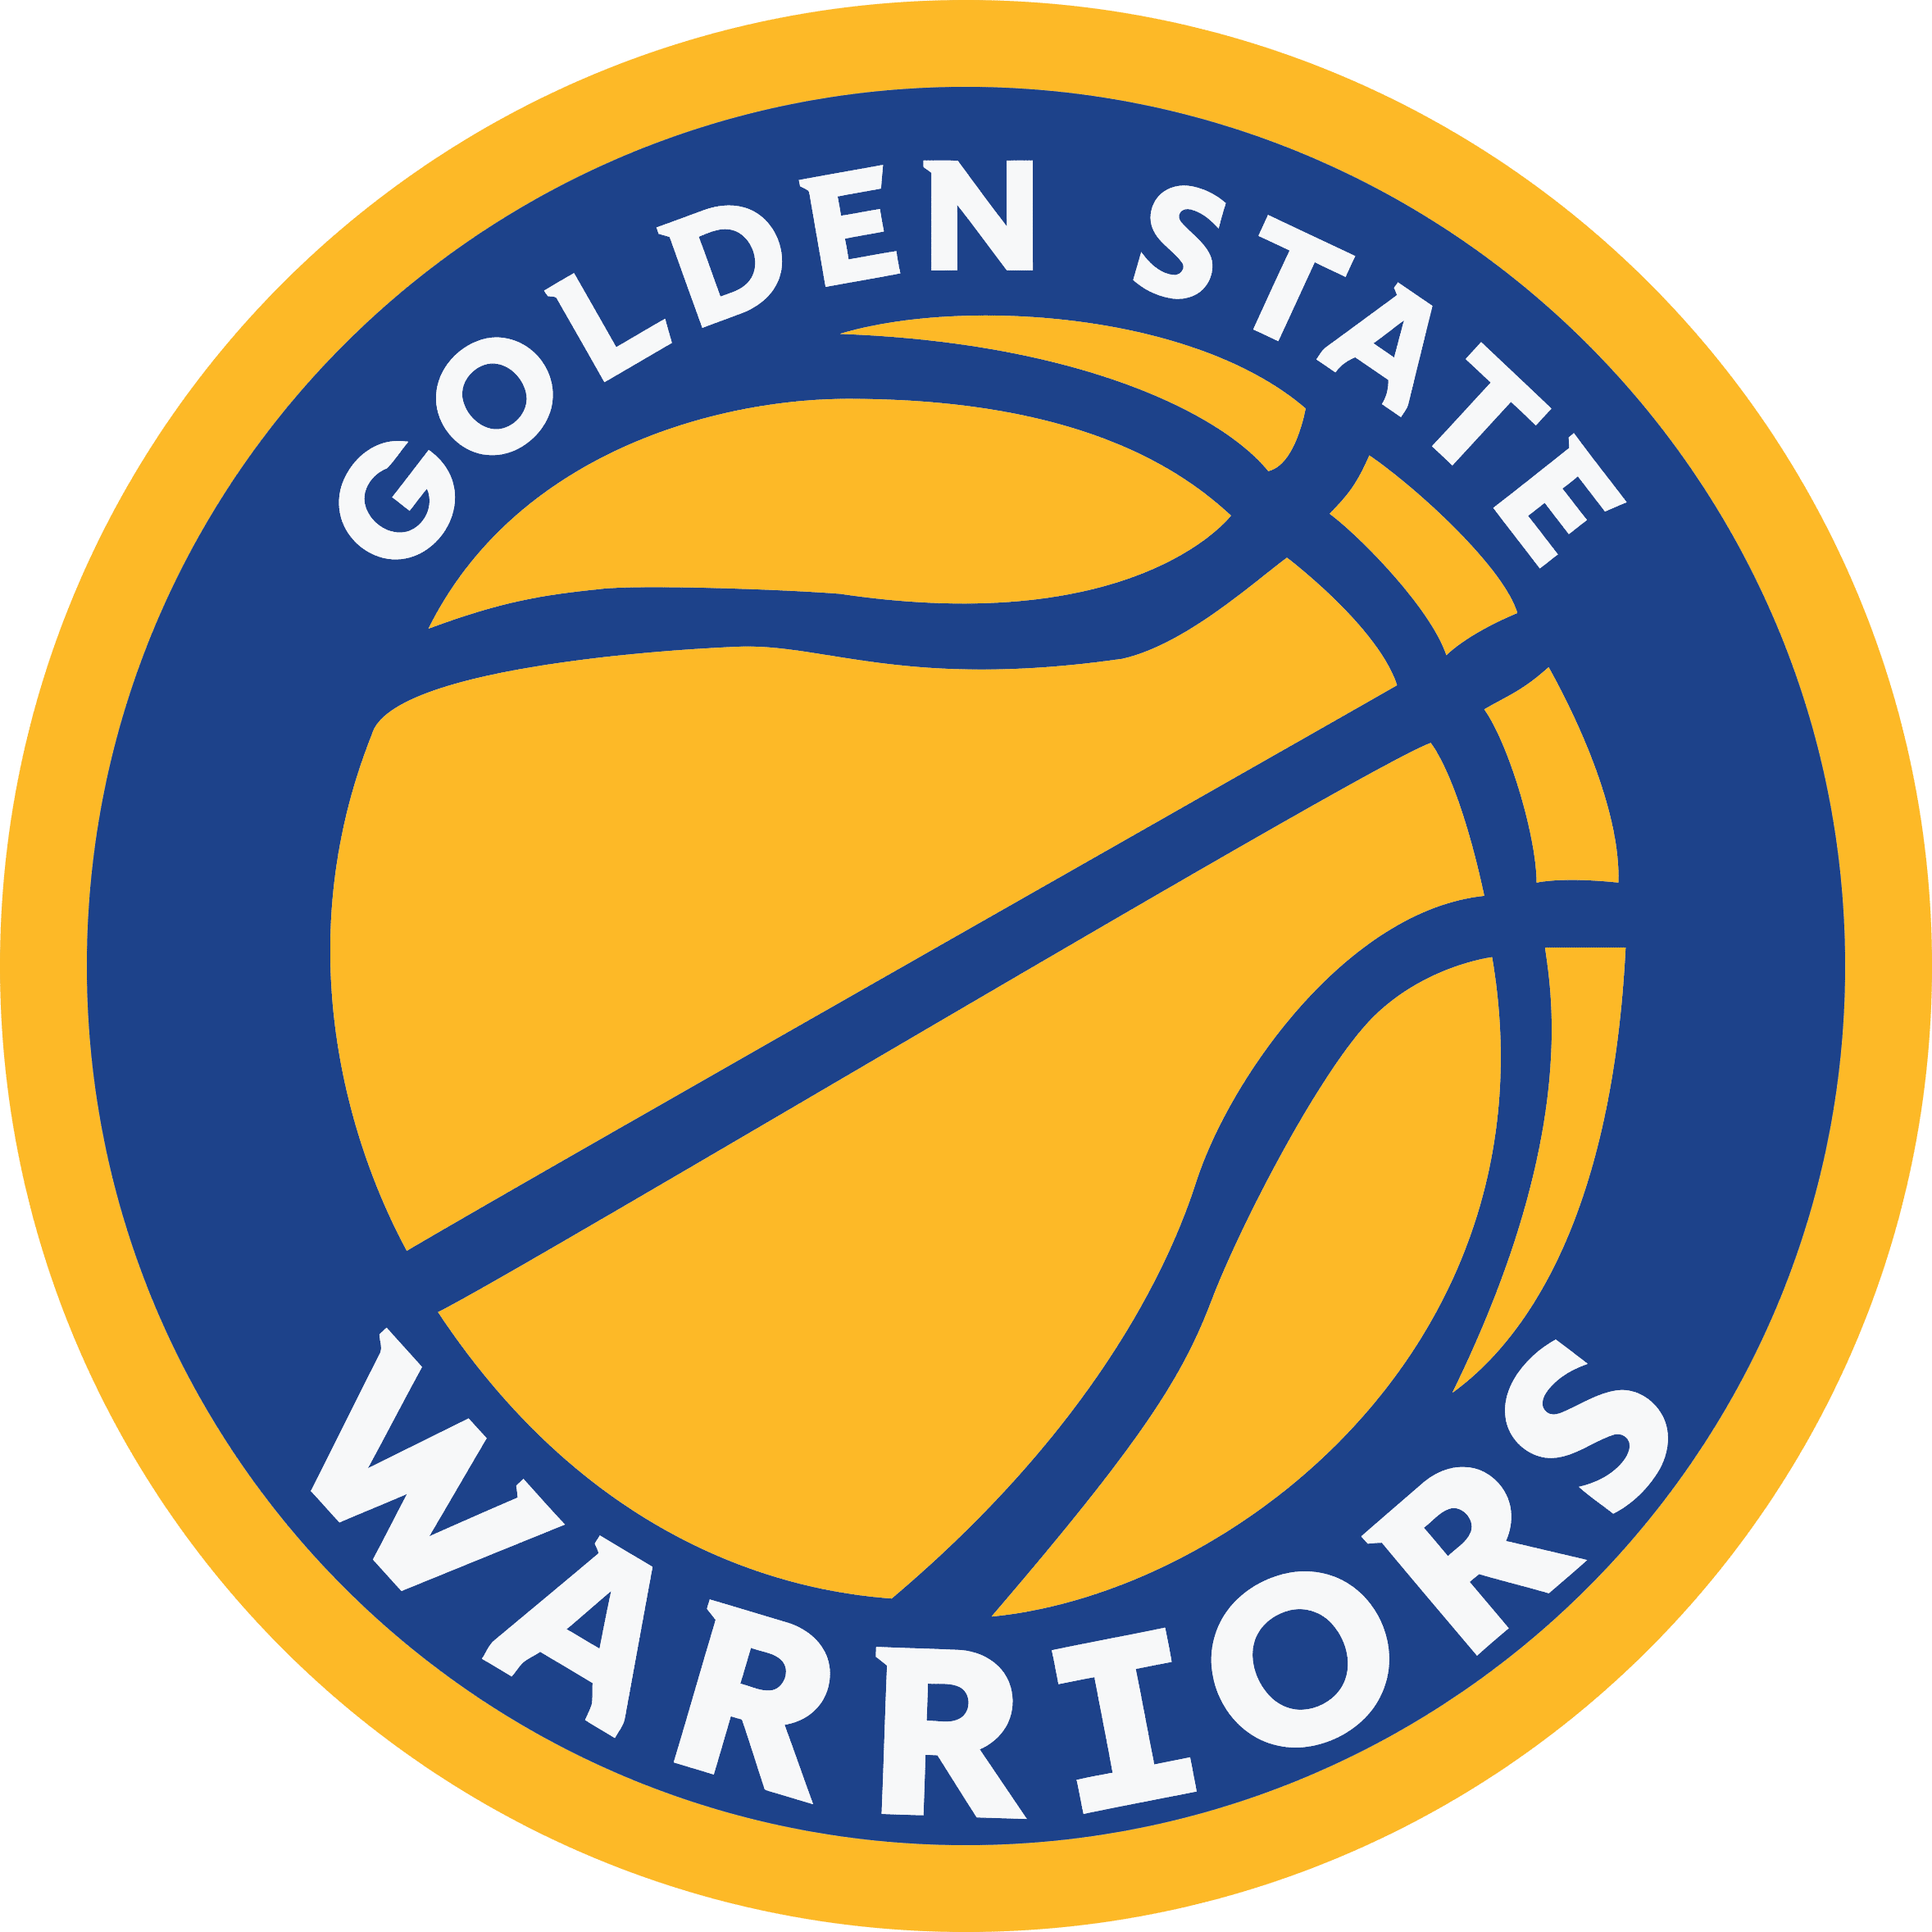 Bundle Golden State Warriors NBA Basketball Logo svg eps dxf png